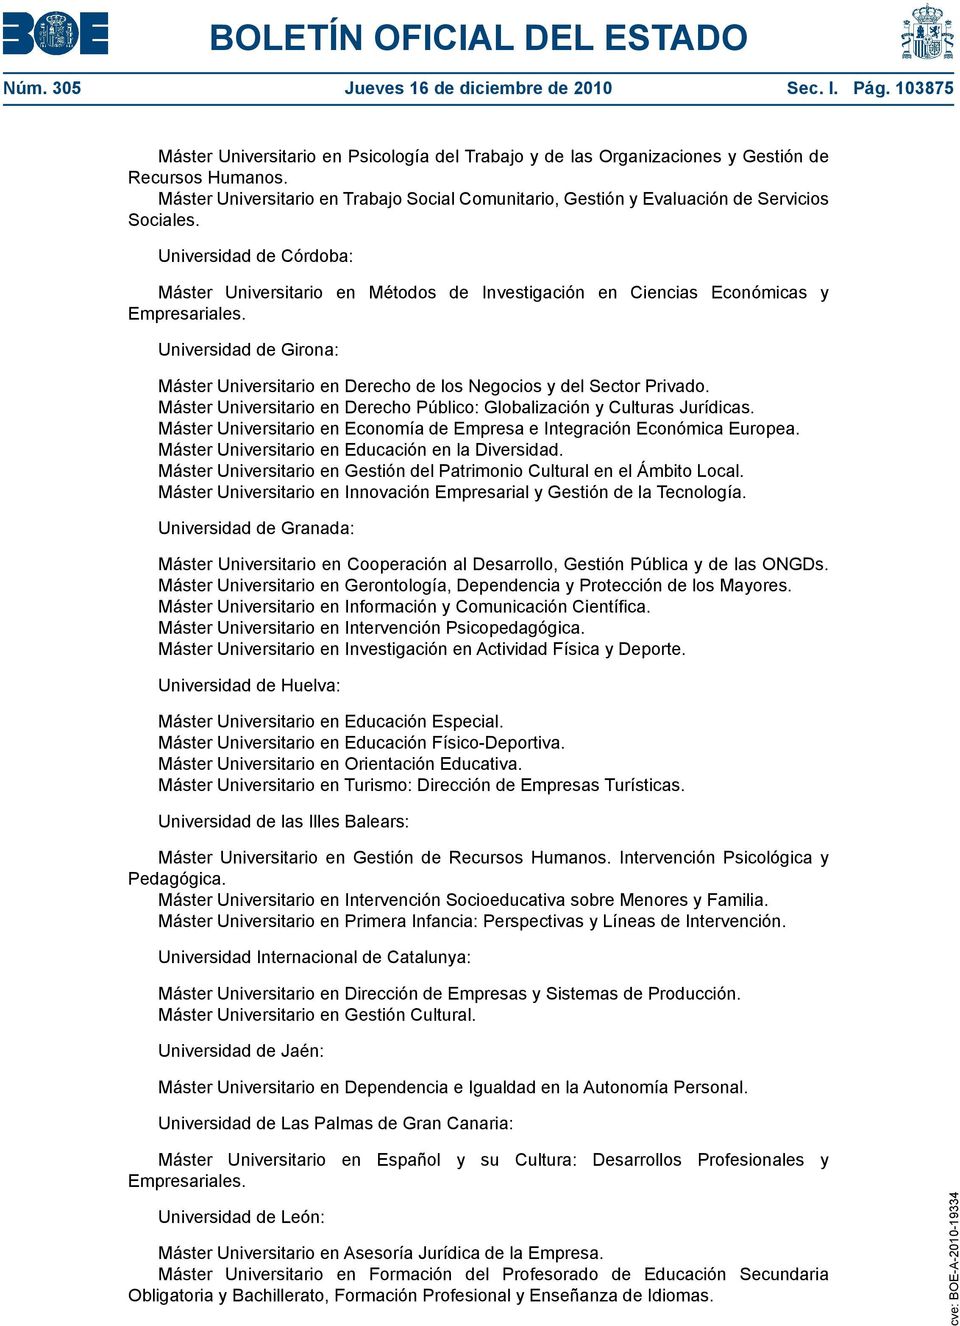 Universidad de Córdoba: Máster Universitario en Métodos de Investigación en Ciencias Económicas y Empresariales.